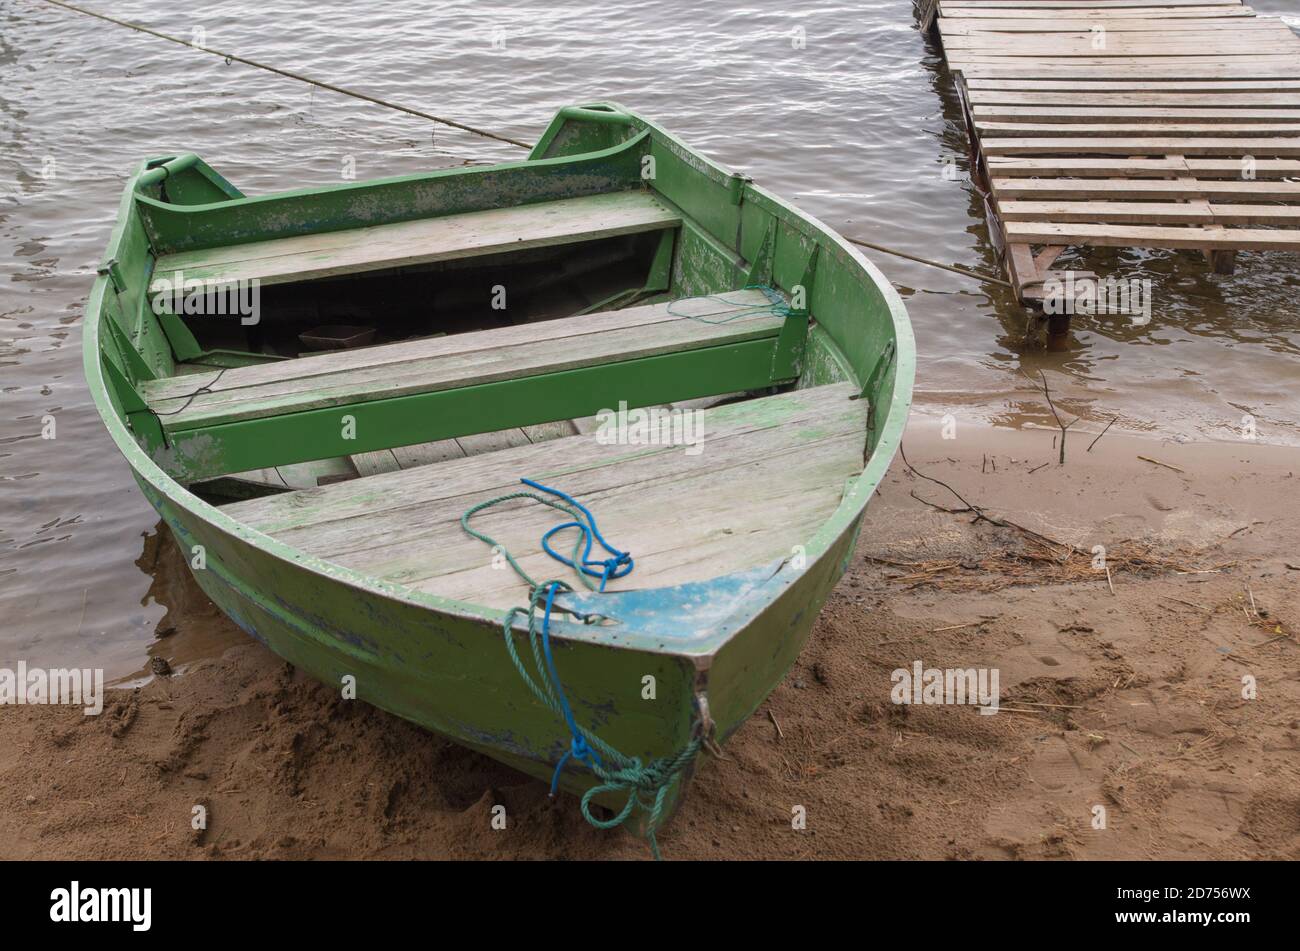 Shabby Holzboot grün lackiert mit zwei Bänken zum Rudern An einem kleinen  Pier am Ufer am Seil festgemacht bucht von See oder Fluss an bewölkten Tag  Stockfotografie - Alamy